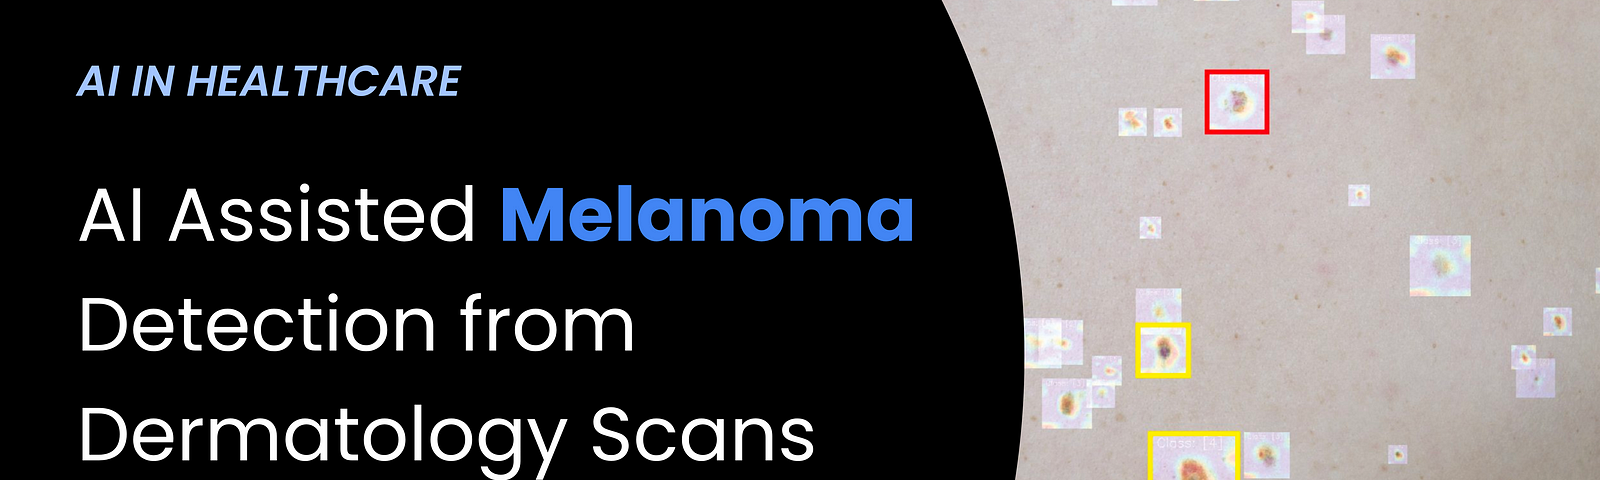 AI Revolutionizing Melanoma Detection from Dermatology Scans | Prodigal AI